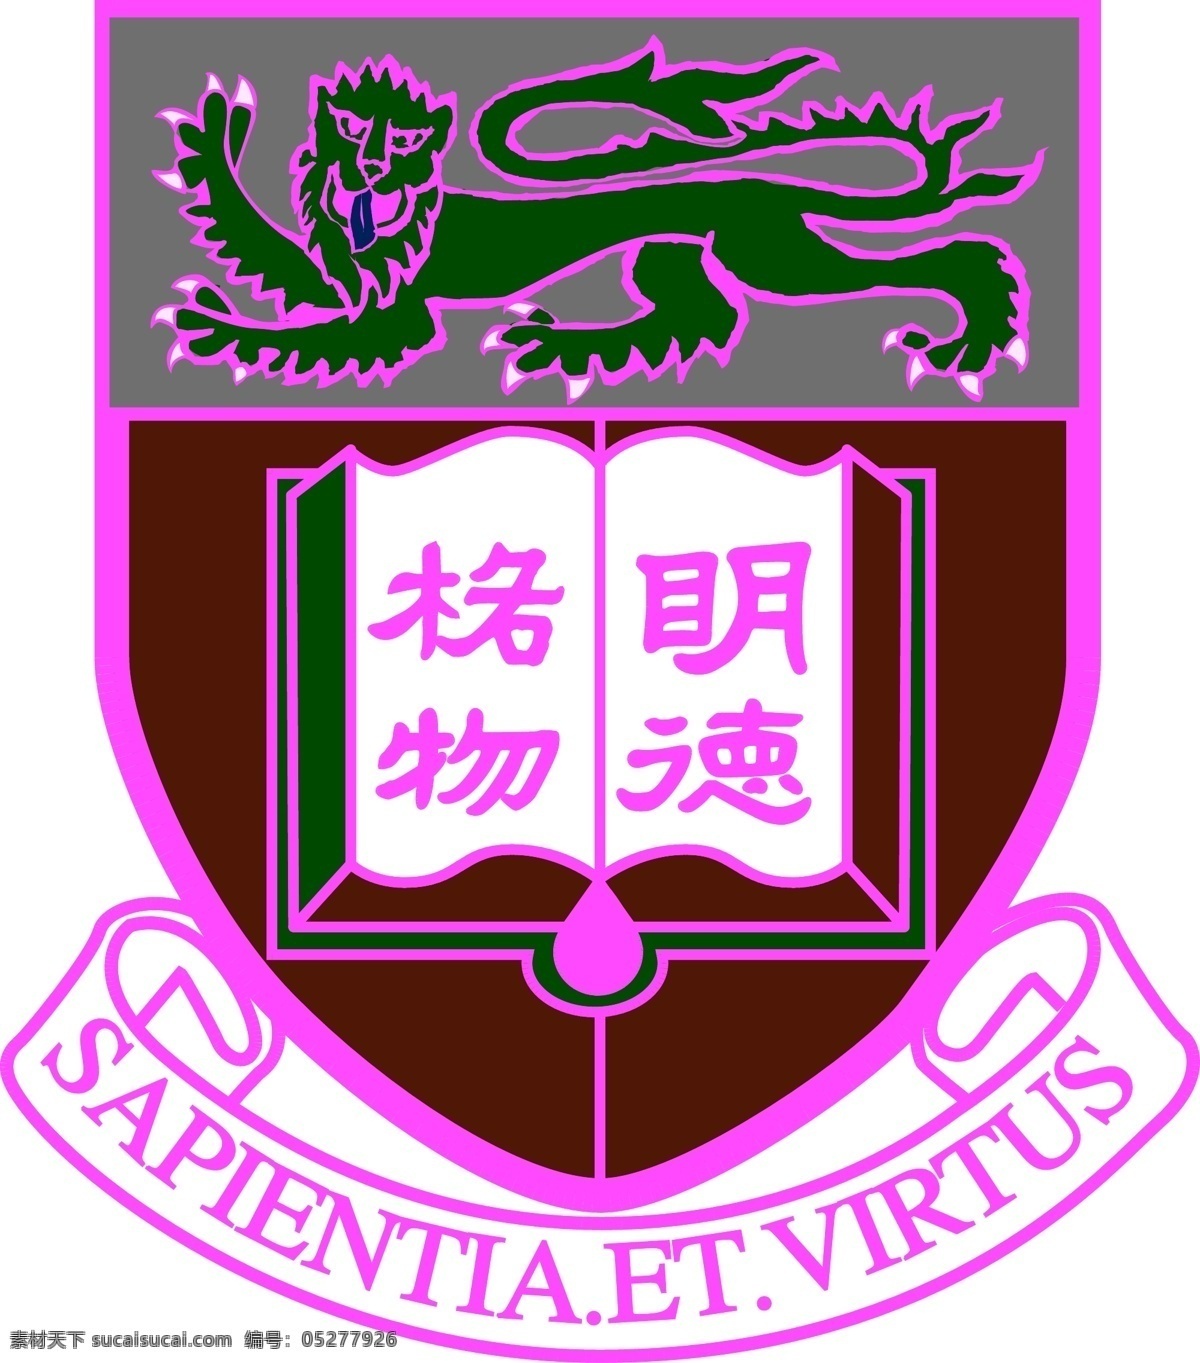 香港大学 明德格物 sapientia et virtus 学校 logo 标志图标 公共标识标志